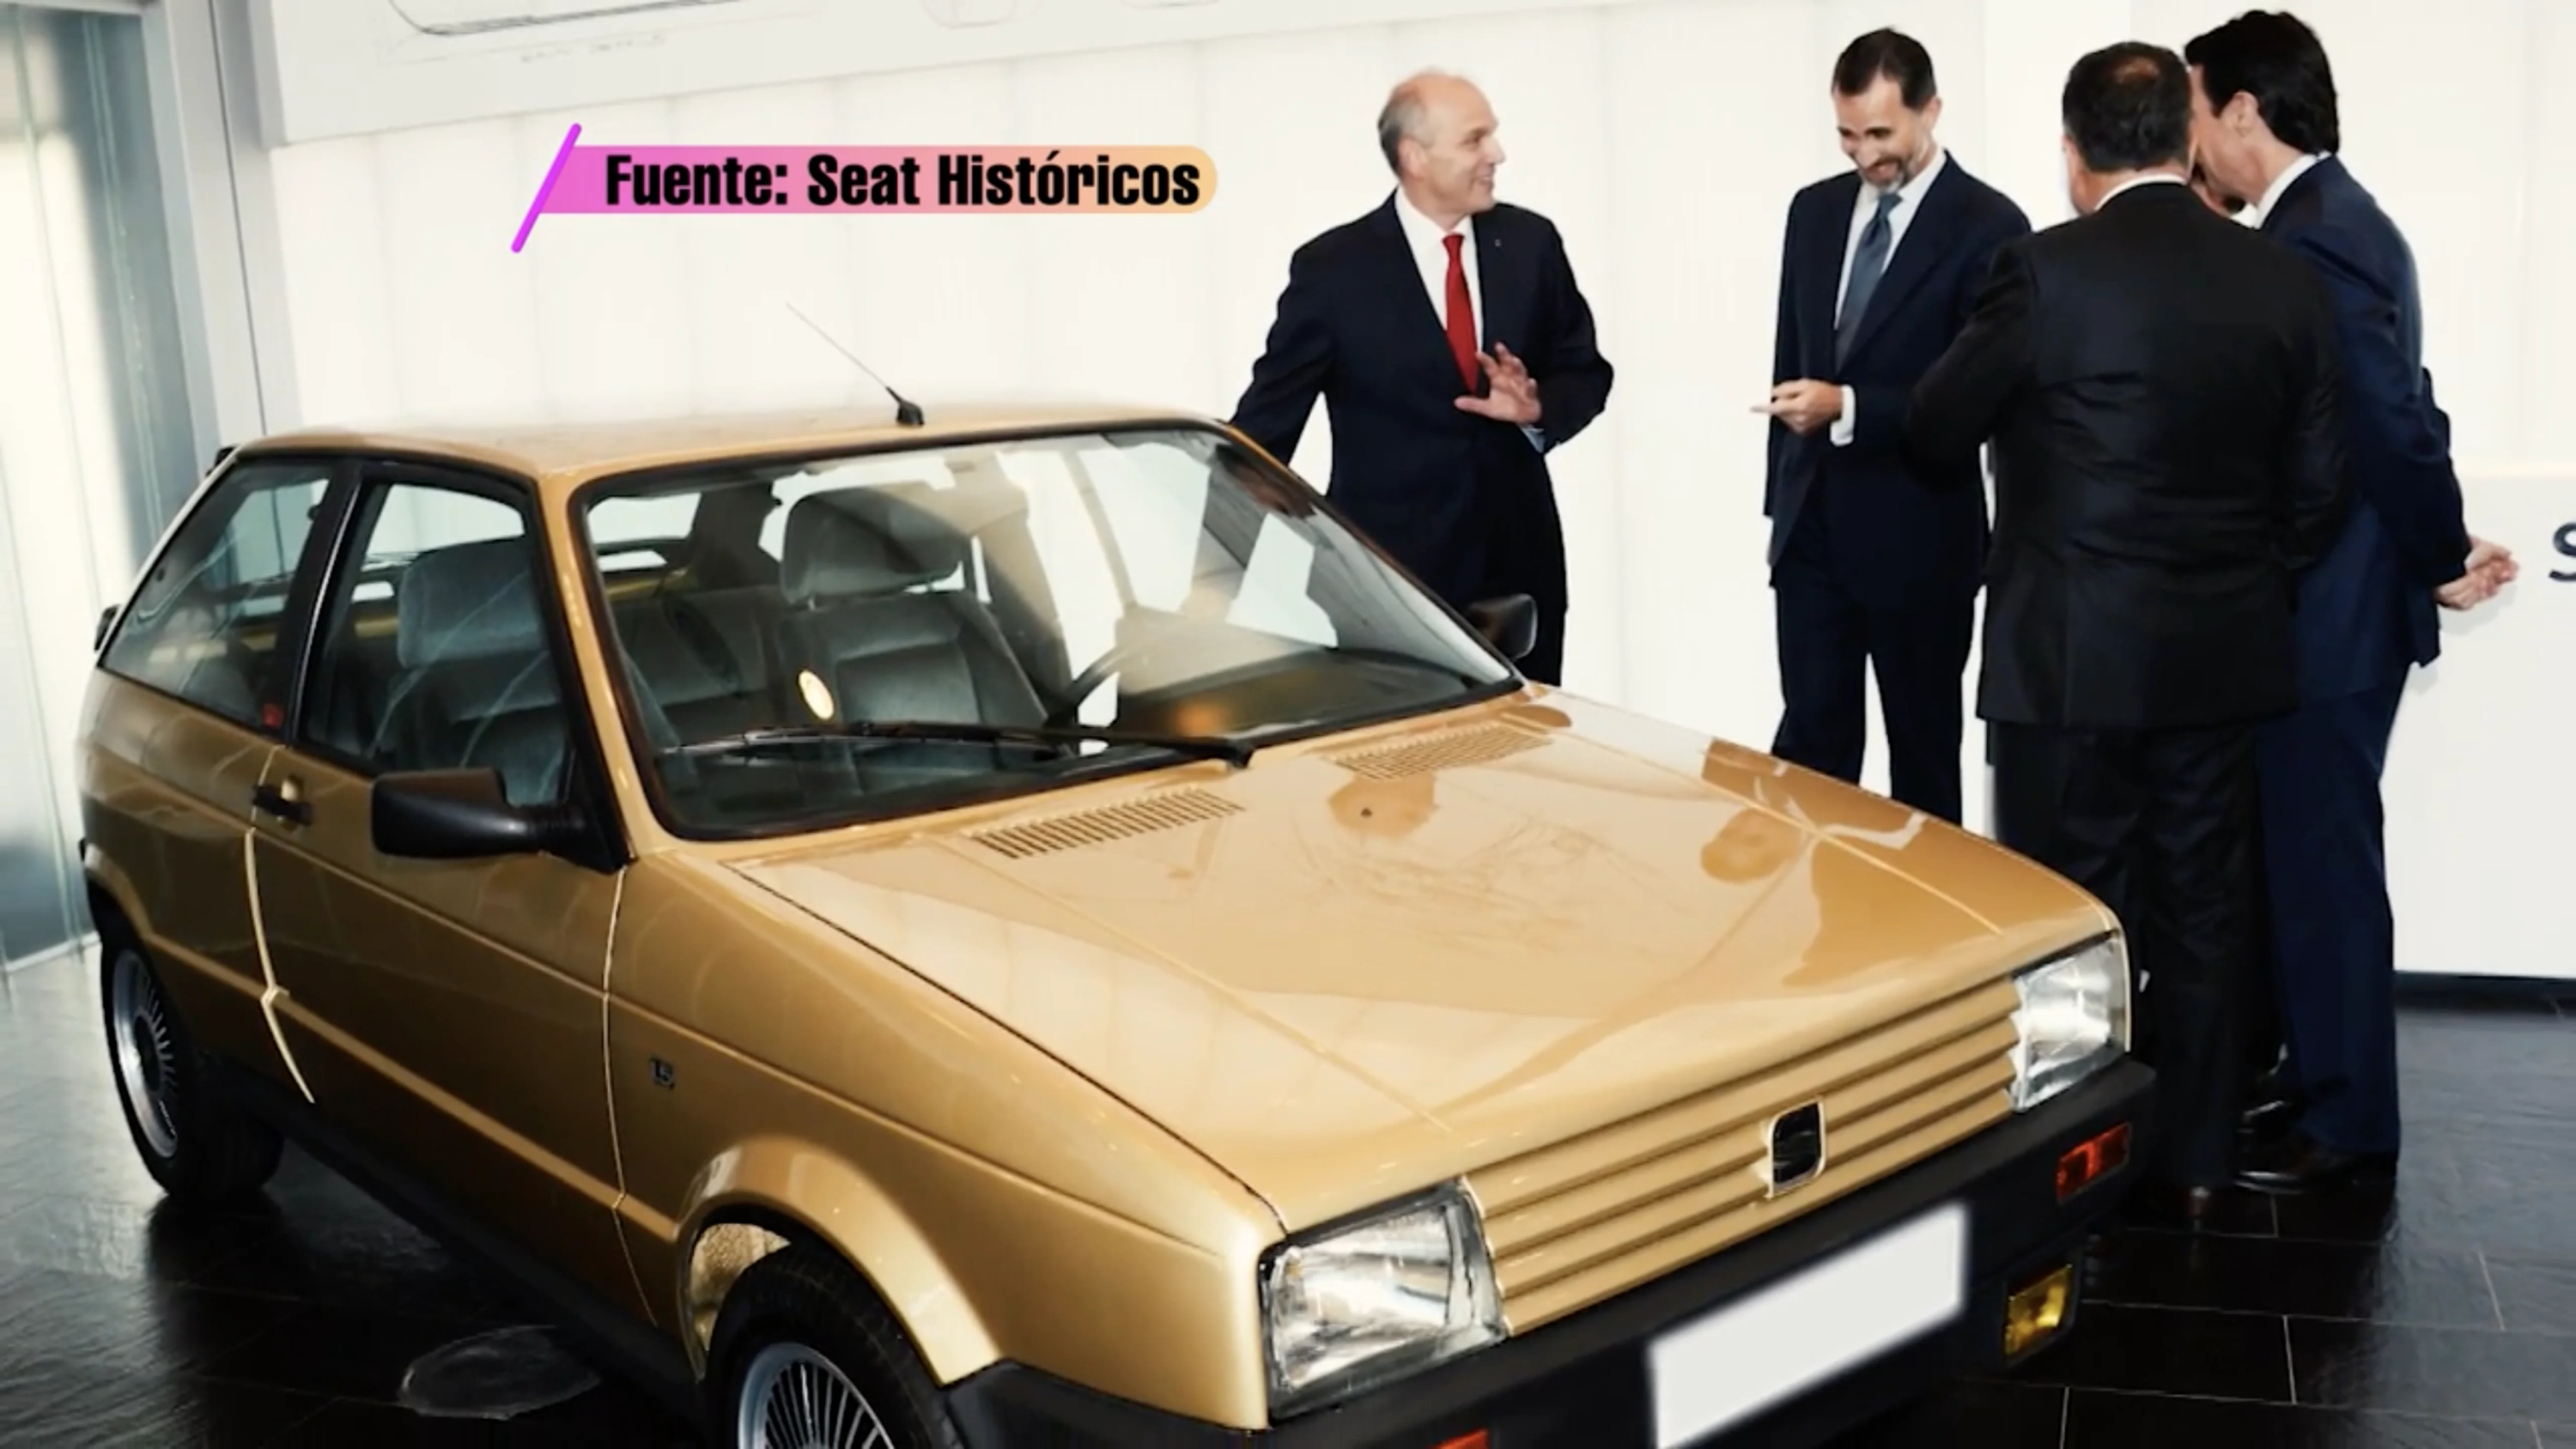 El Seat Ibiza de Felipe VI